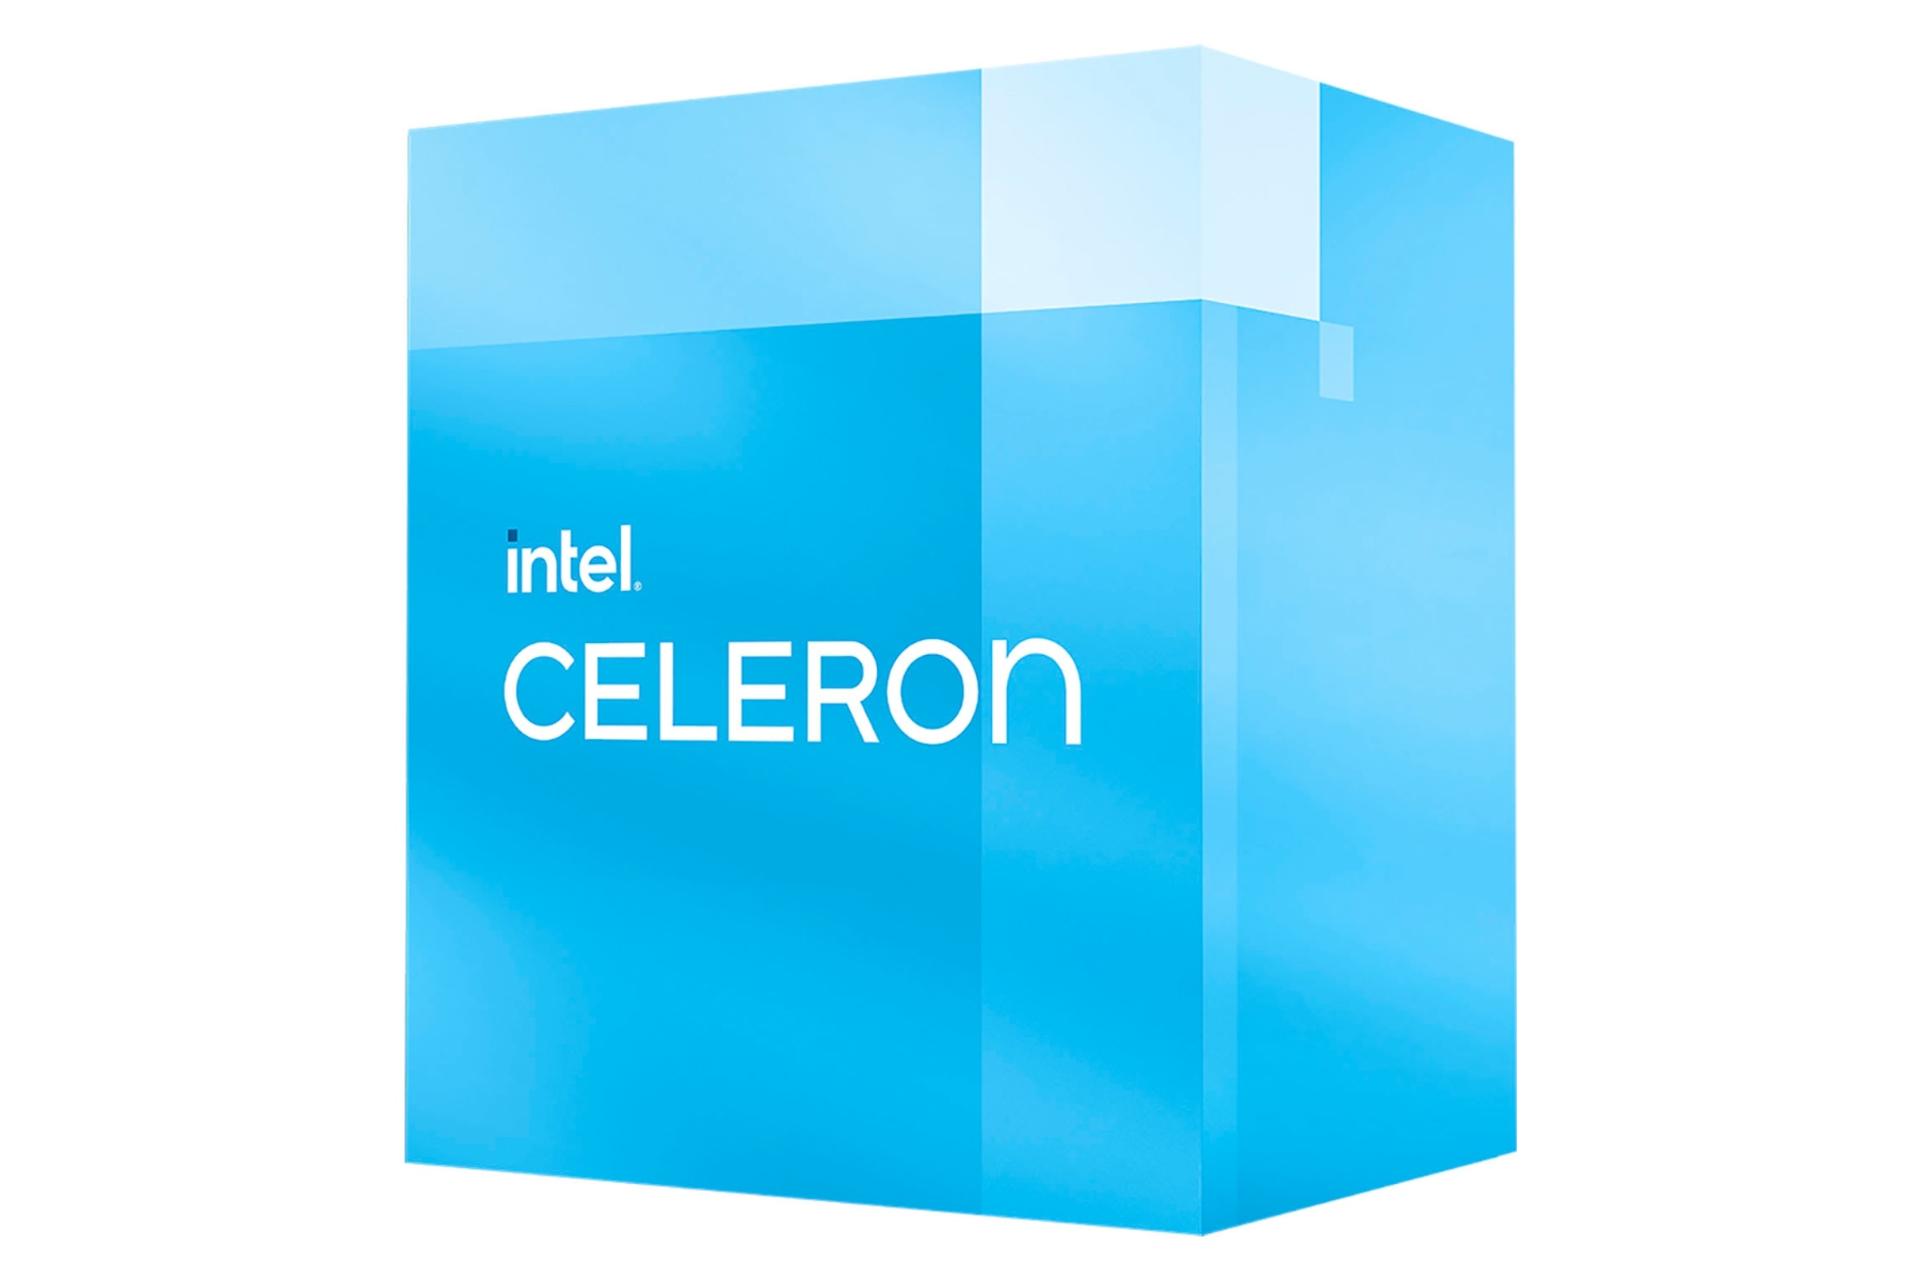 نمای راست جعبه پردازنده اینتل سلرون نسل دوازدهم / Intel Celeron 12th Gen